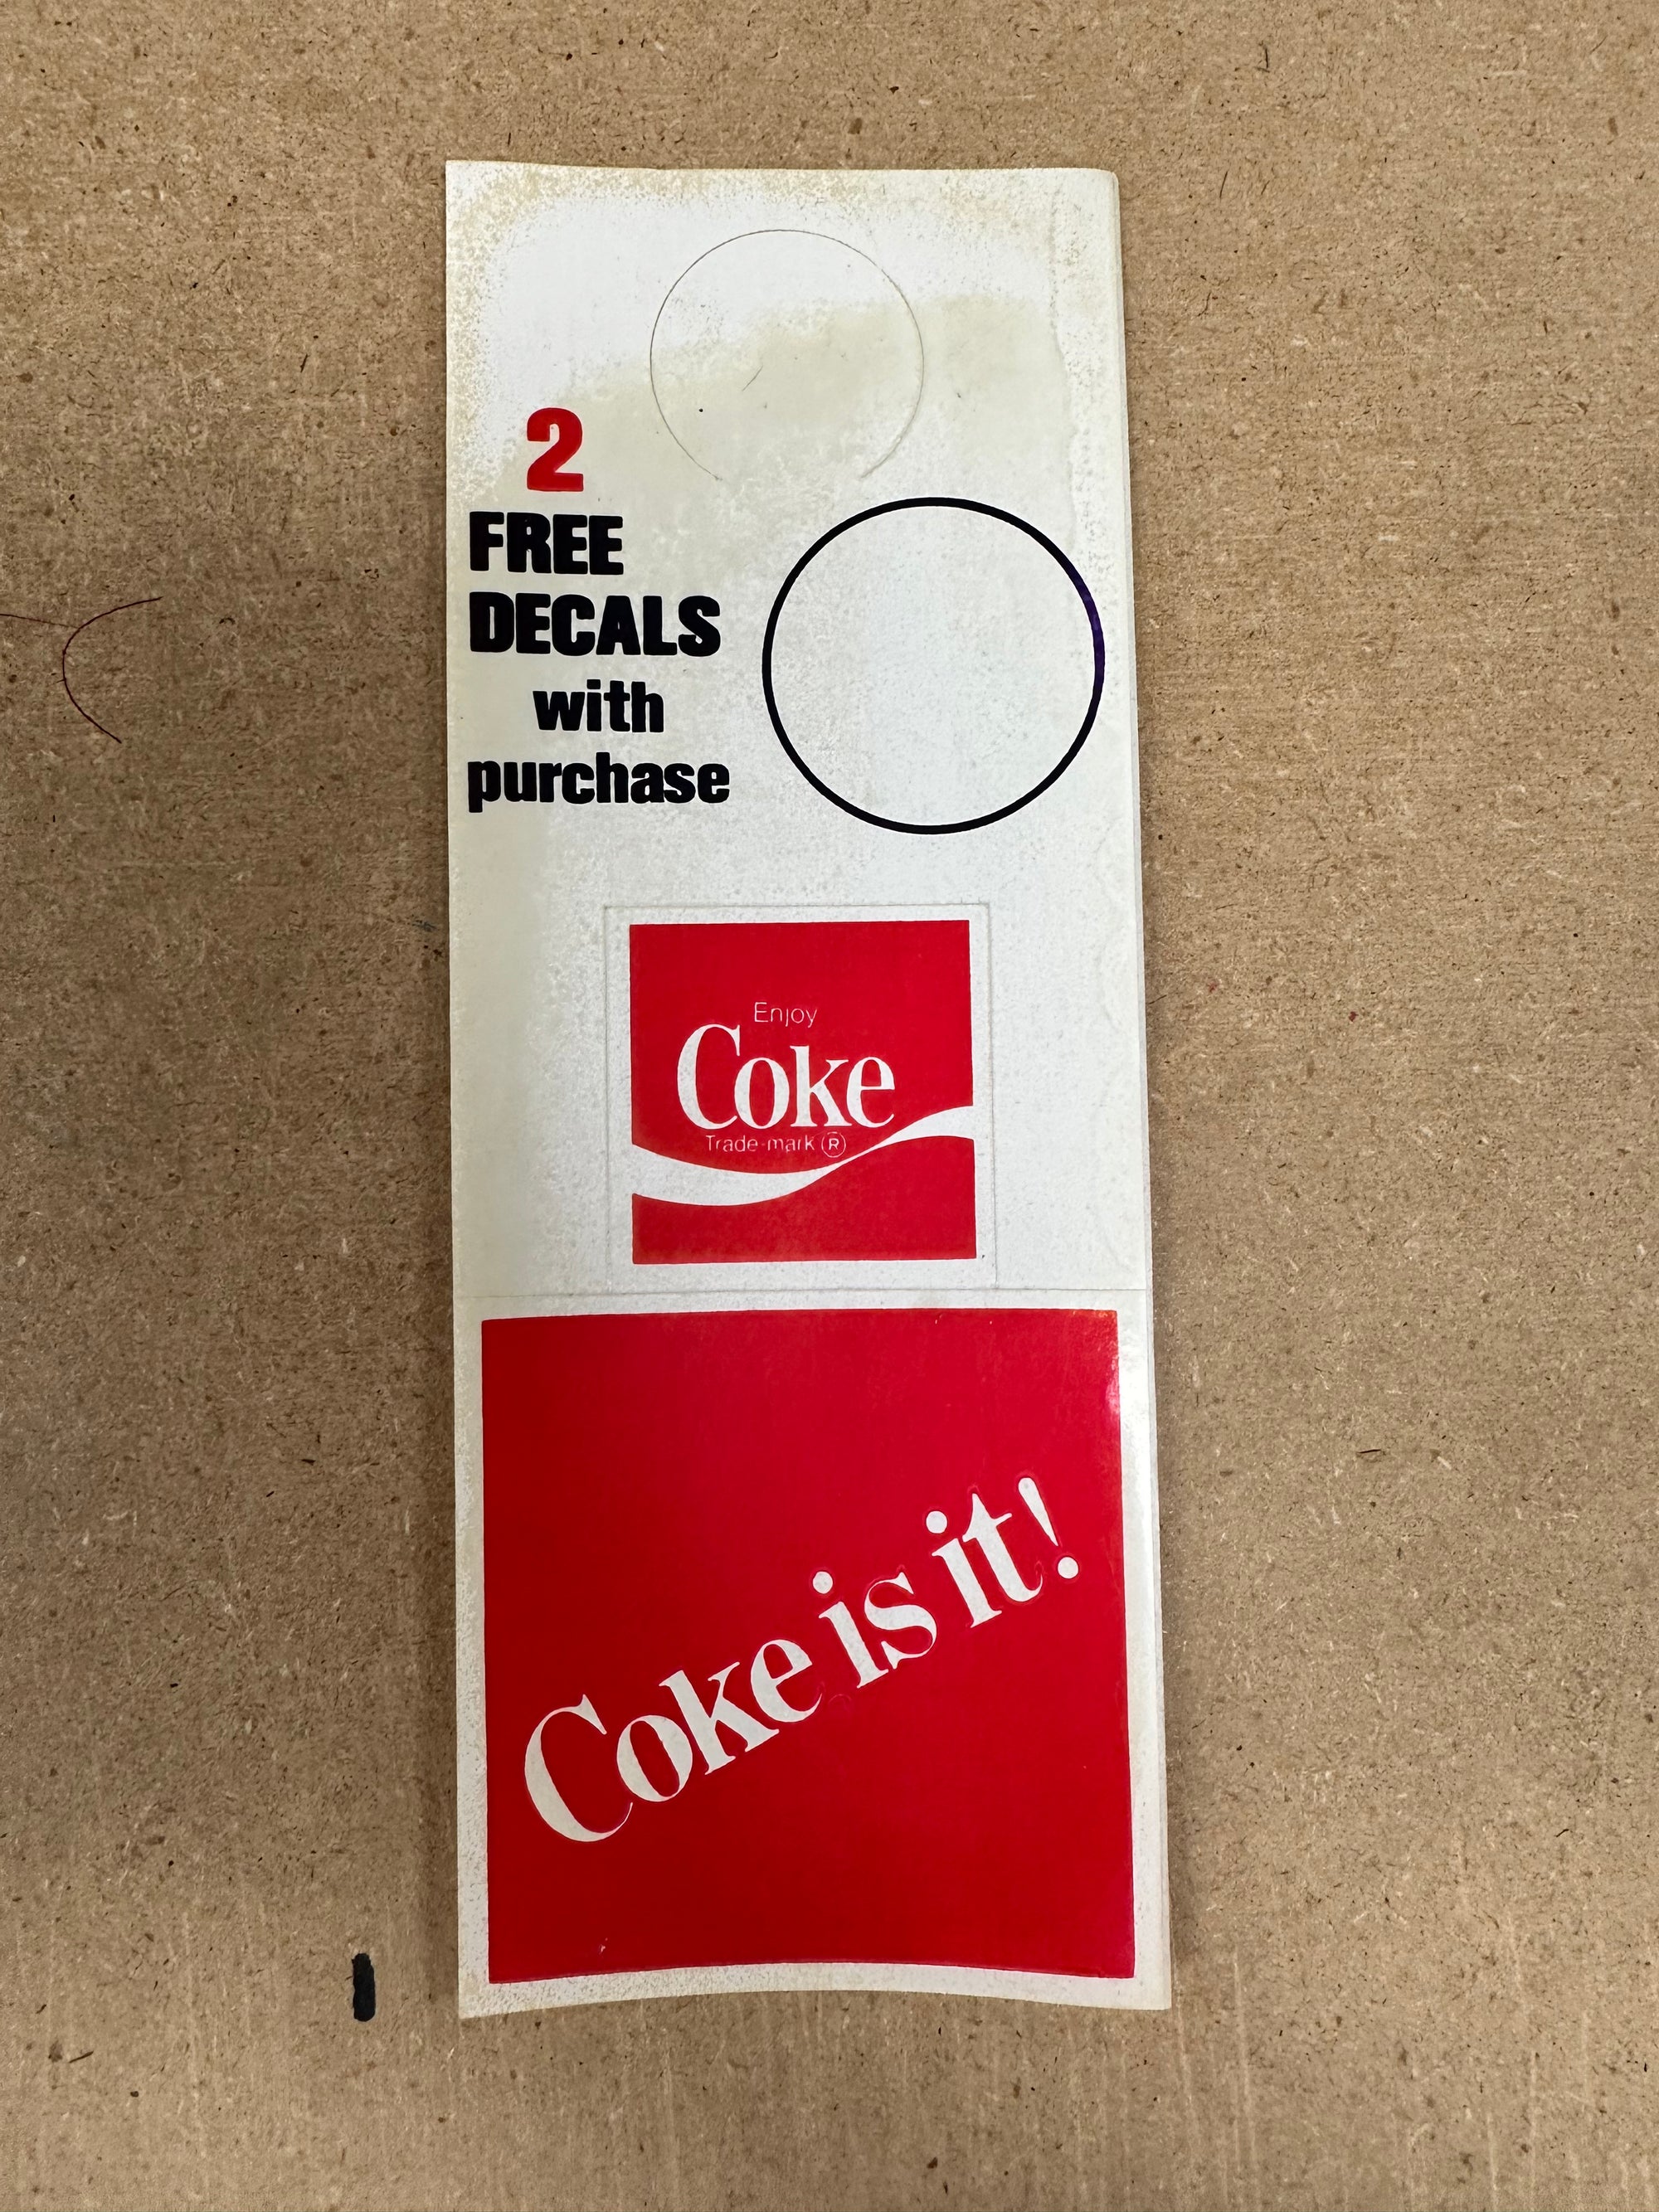 Coke is it! stickers